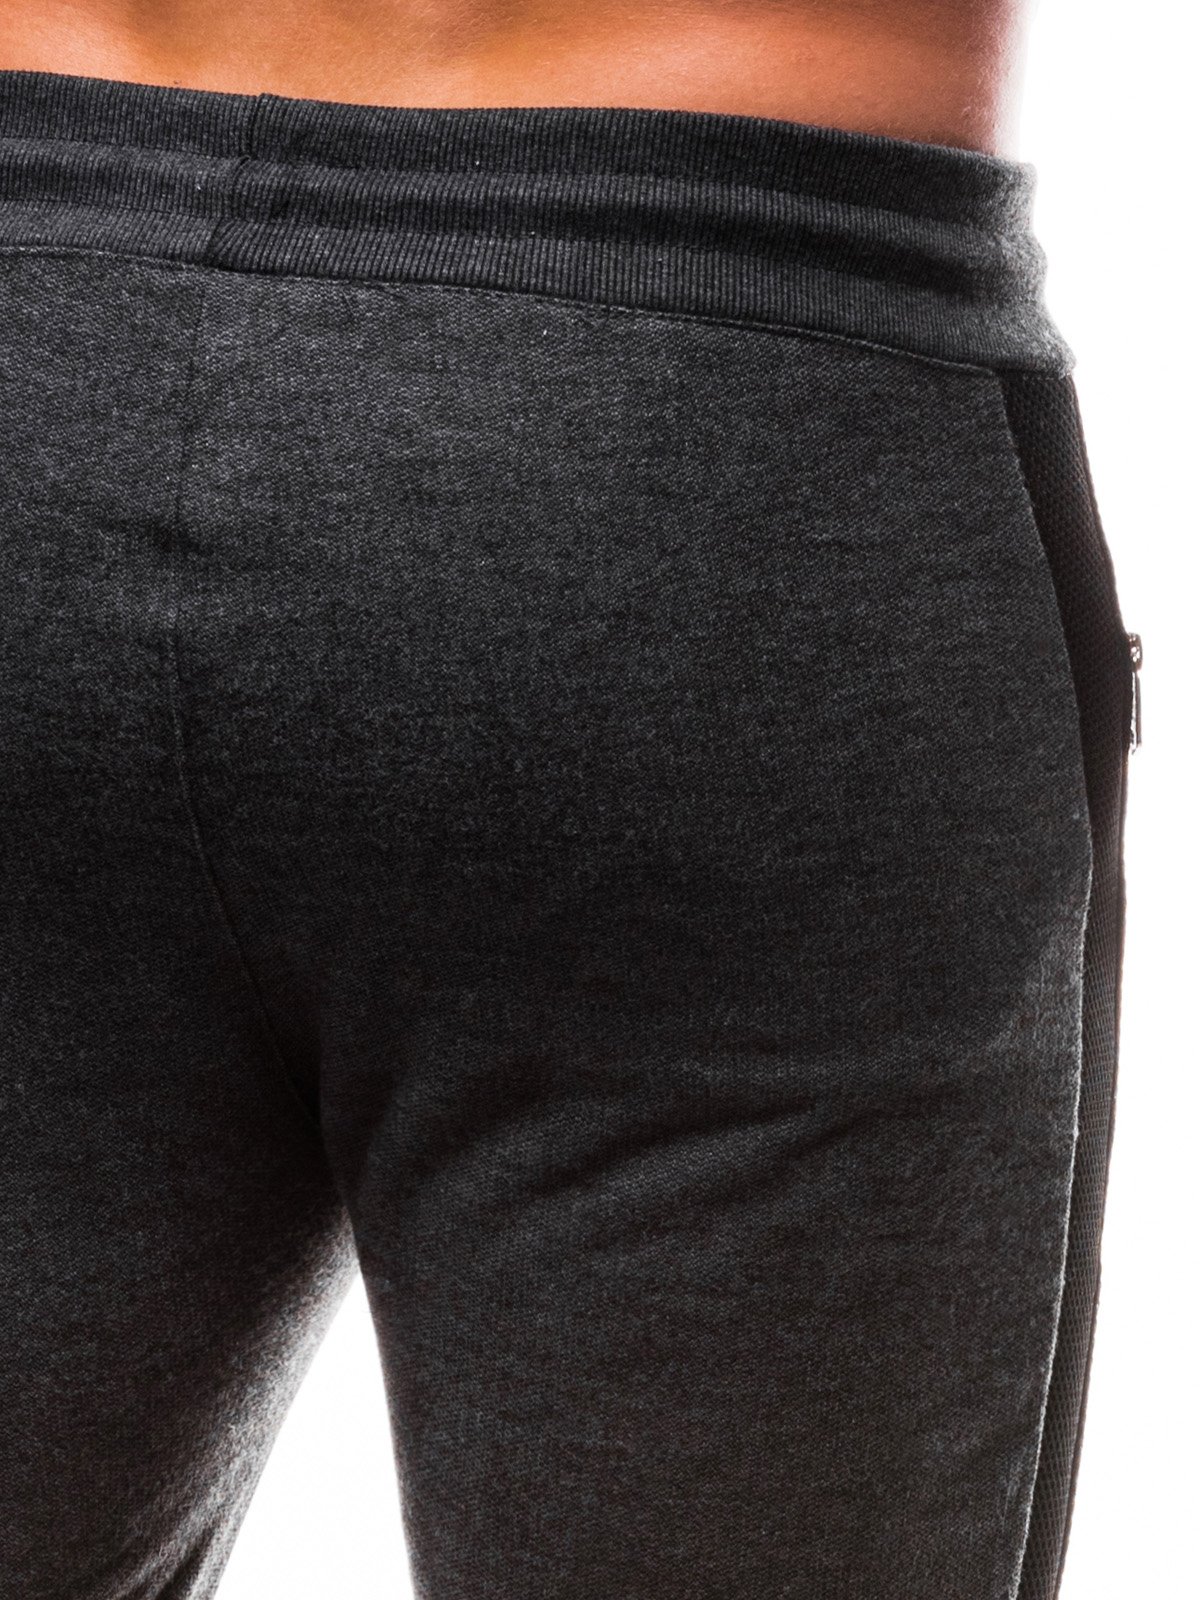 Men's sweatpants P802 - black | MODONE wholesale - Clothing For Men